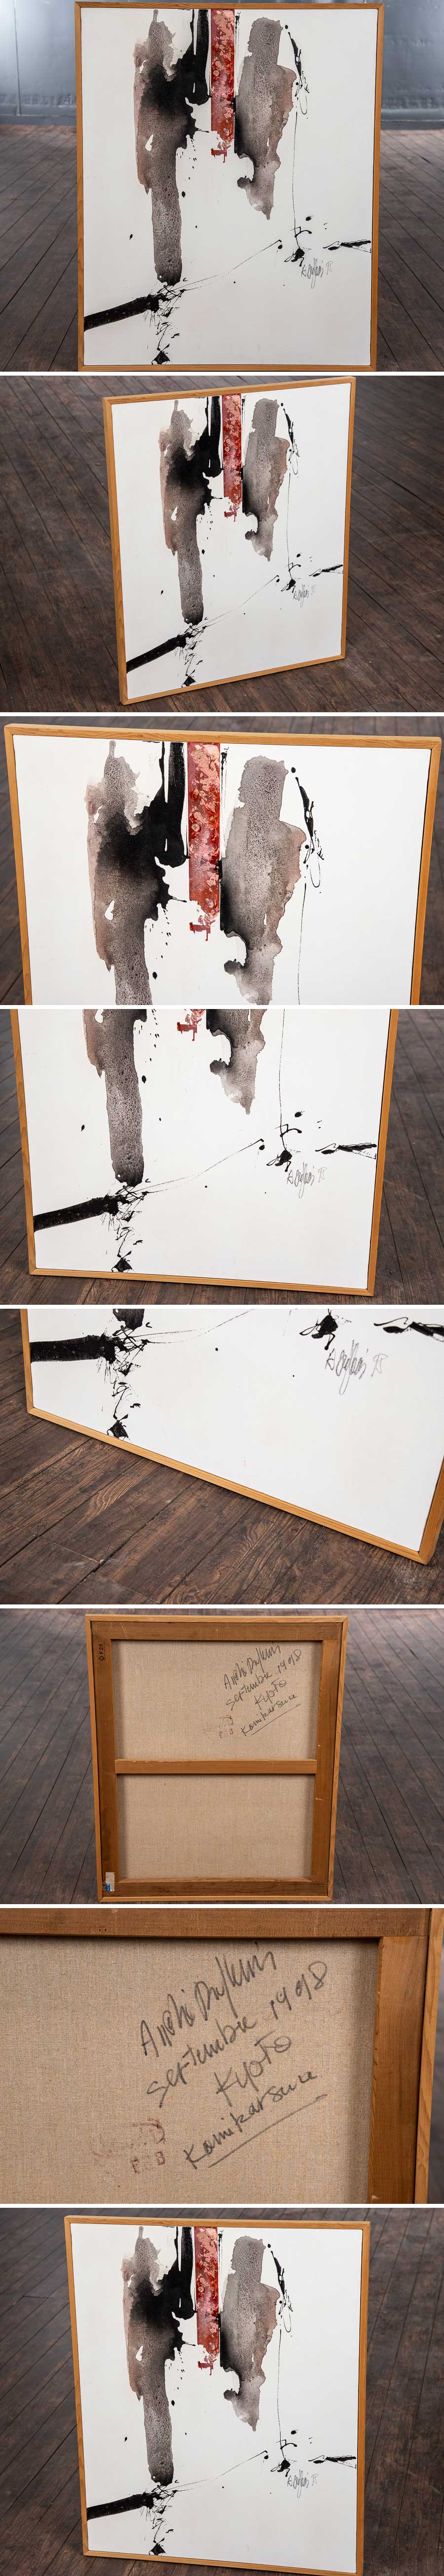 【特注製品】『 キャンバス 20号 径83cm×68cm S488 』 アートパネル 抽象画 現代アート 芸術 美術 絵画 ギャラリー カフェ インテリア その他